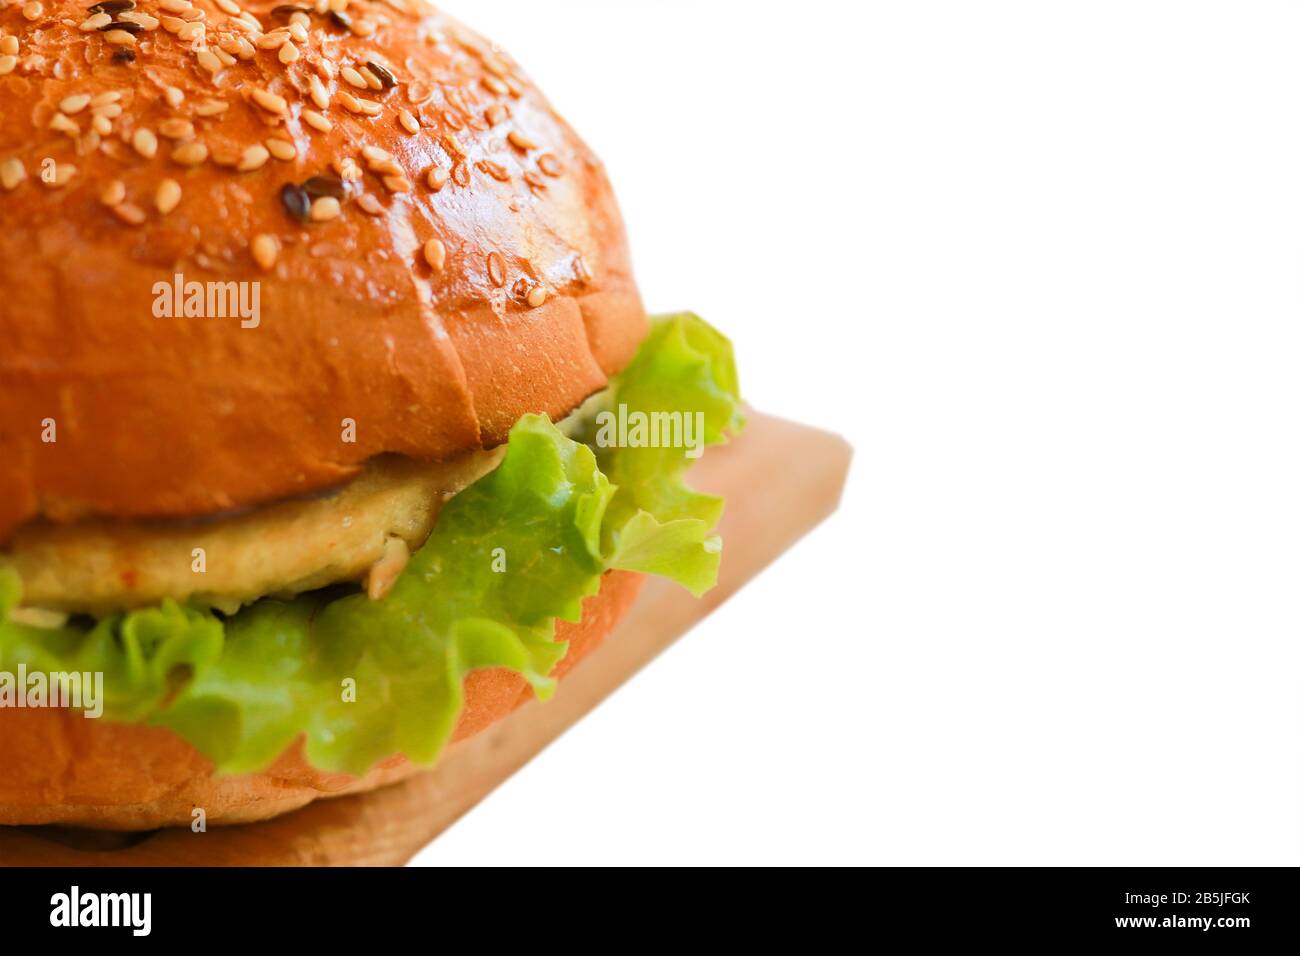 Primo piano hamburger vegetariano Isolato su sfondo bianco con semi di sesamo, carne artificiale, lattuga verde. Messa a fuoco selezionata Foto Stock